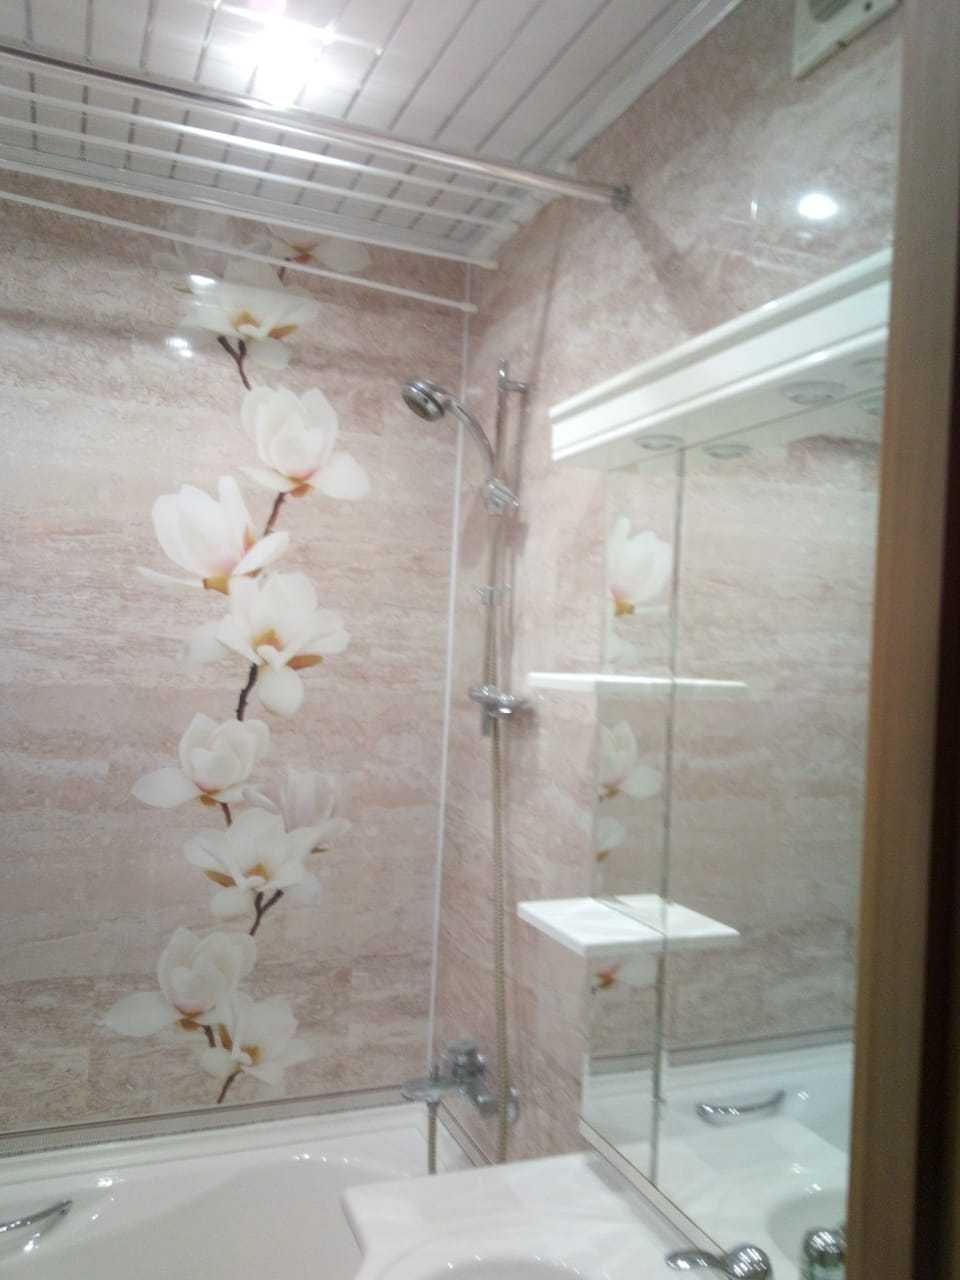 Панели в ванной отзывы. Ванная панелями. Панели ПВХ для ванной. Ванная комната из пластиковых панелей. Отделка ванной панелями ПВХ.